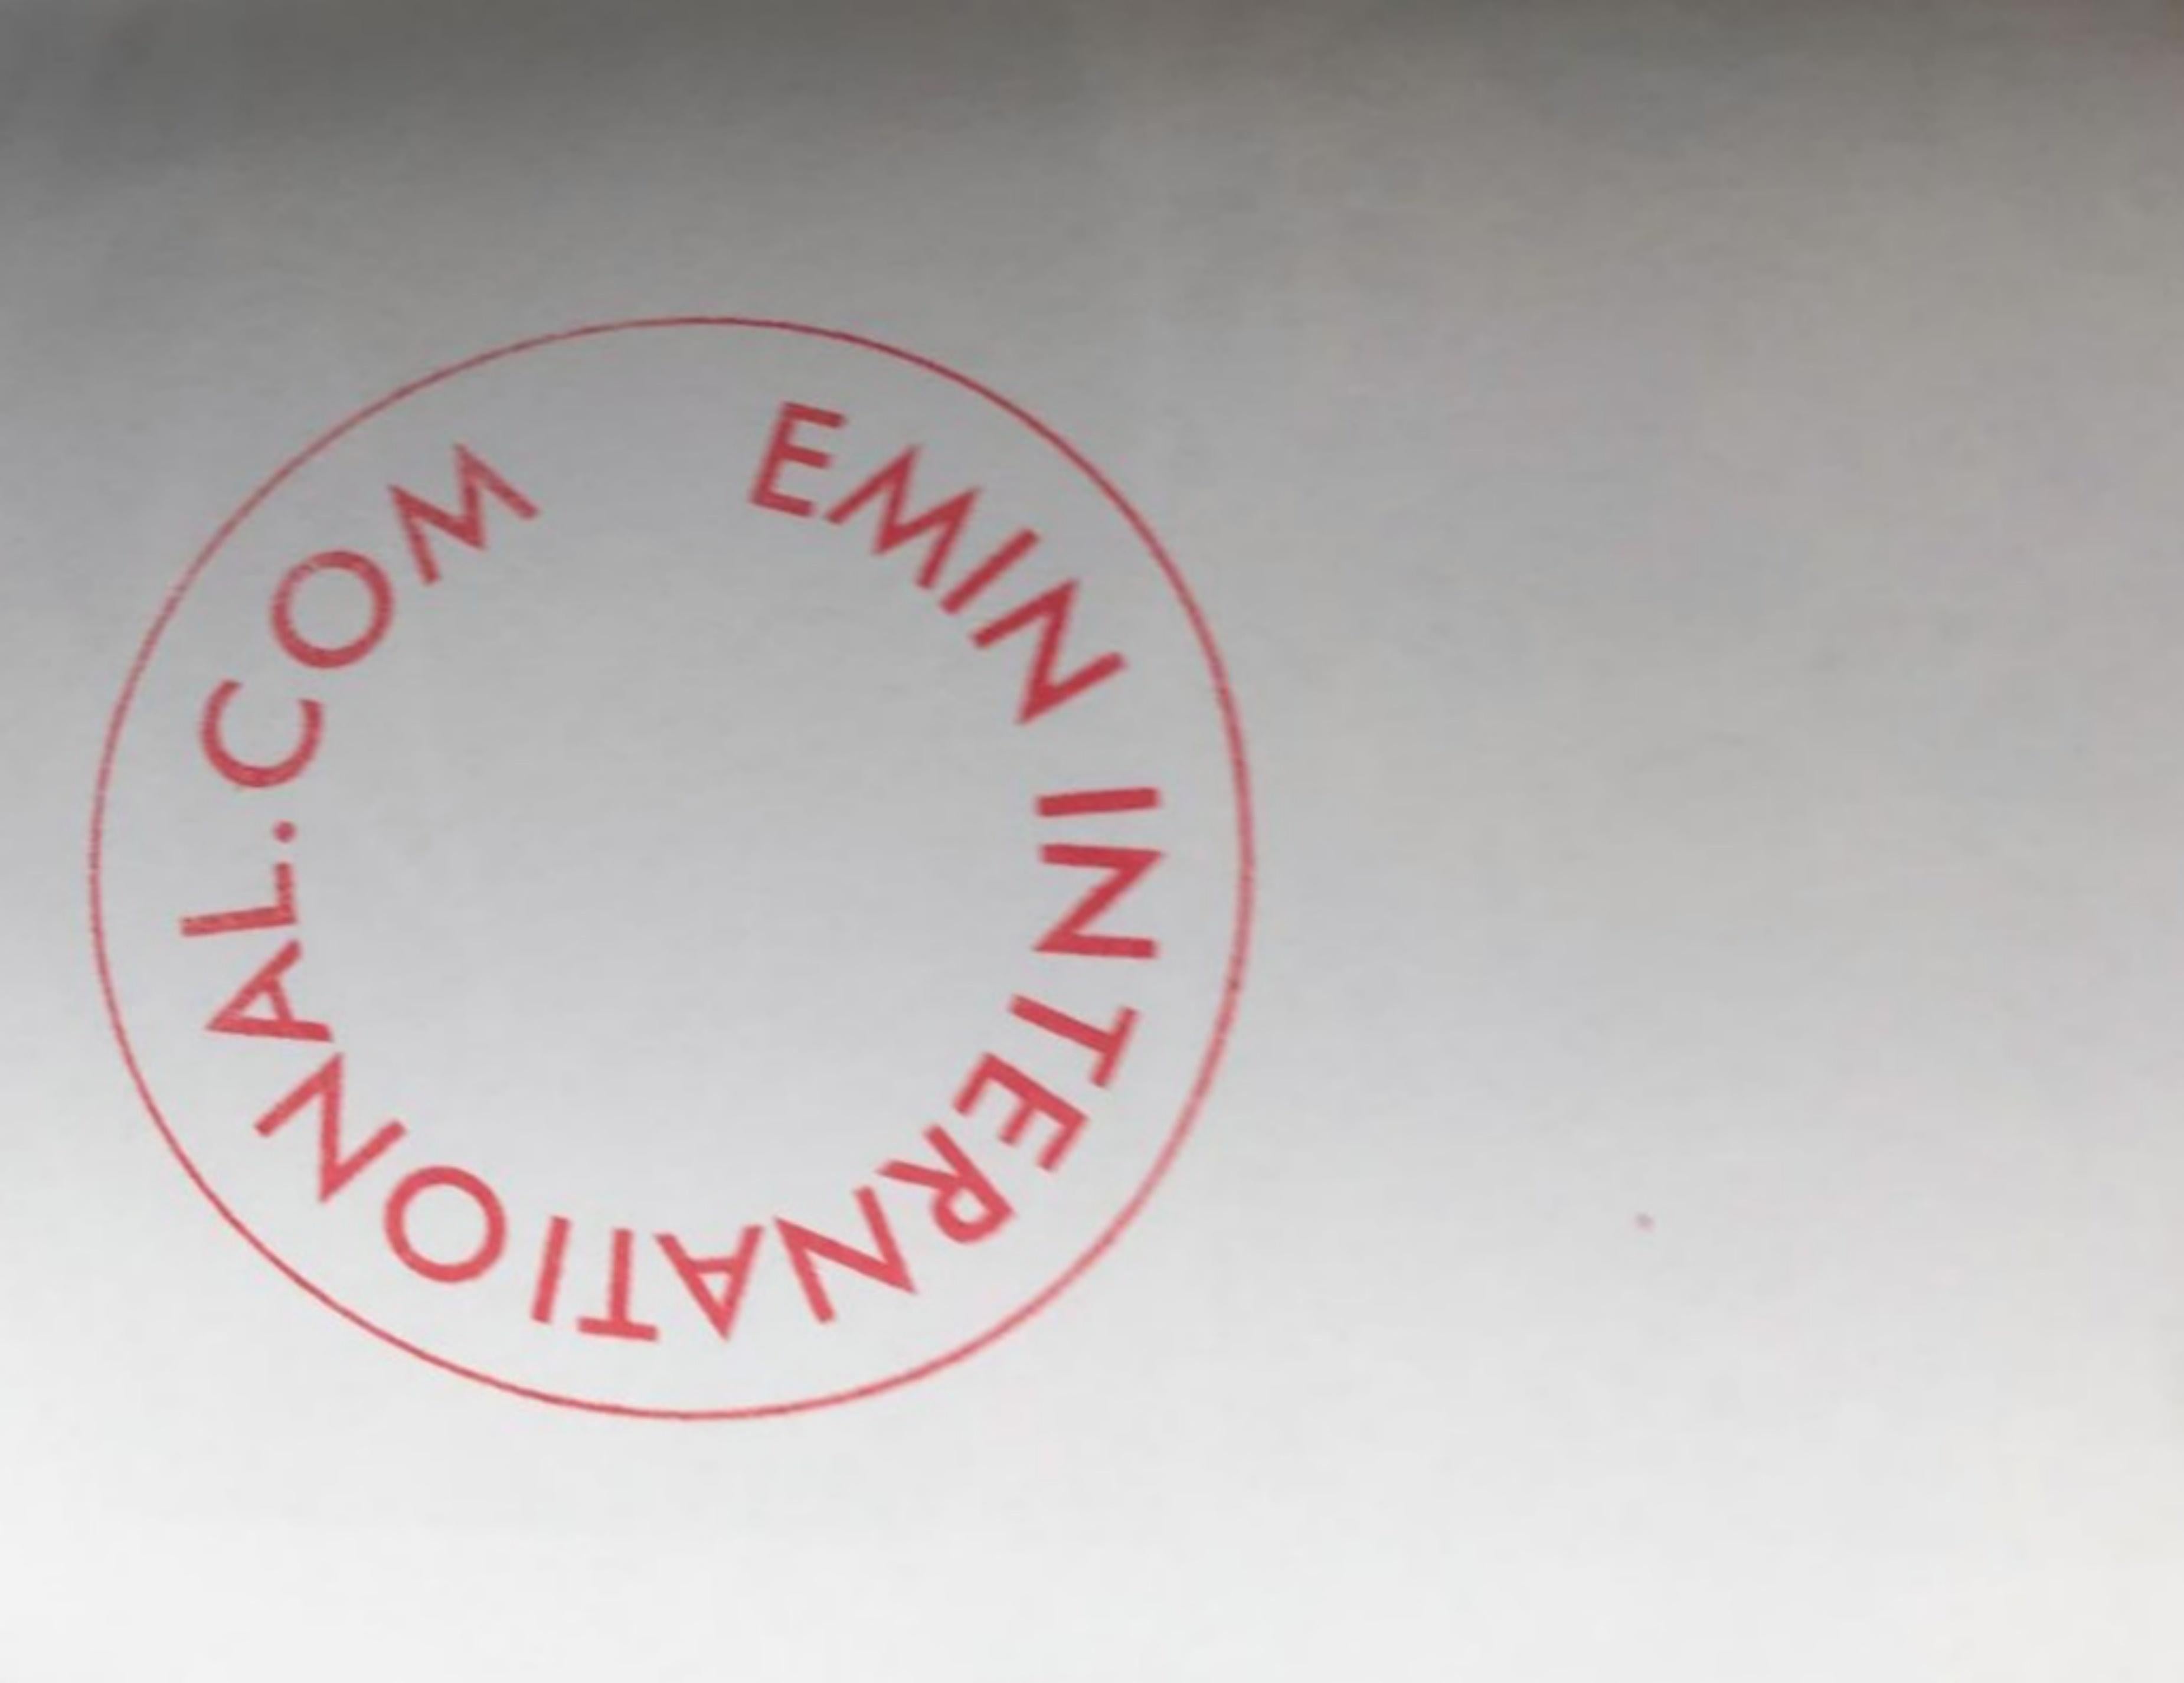 I Can Still Love (estampe artisanale signée à la main) romantique de l'artiste britannique pop YBA - Print de Tracey Emin